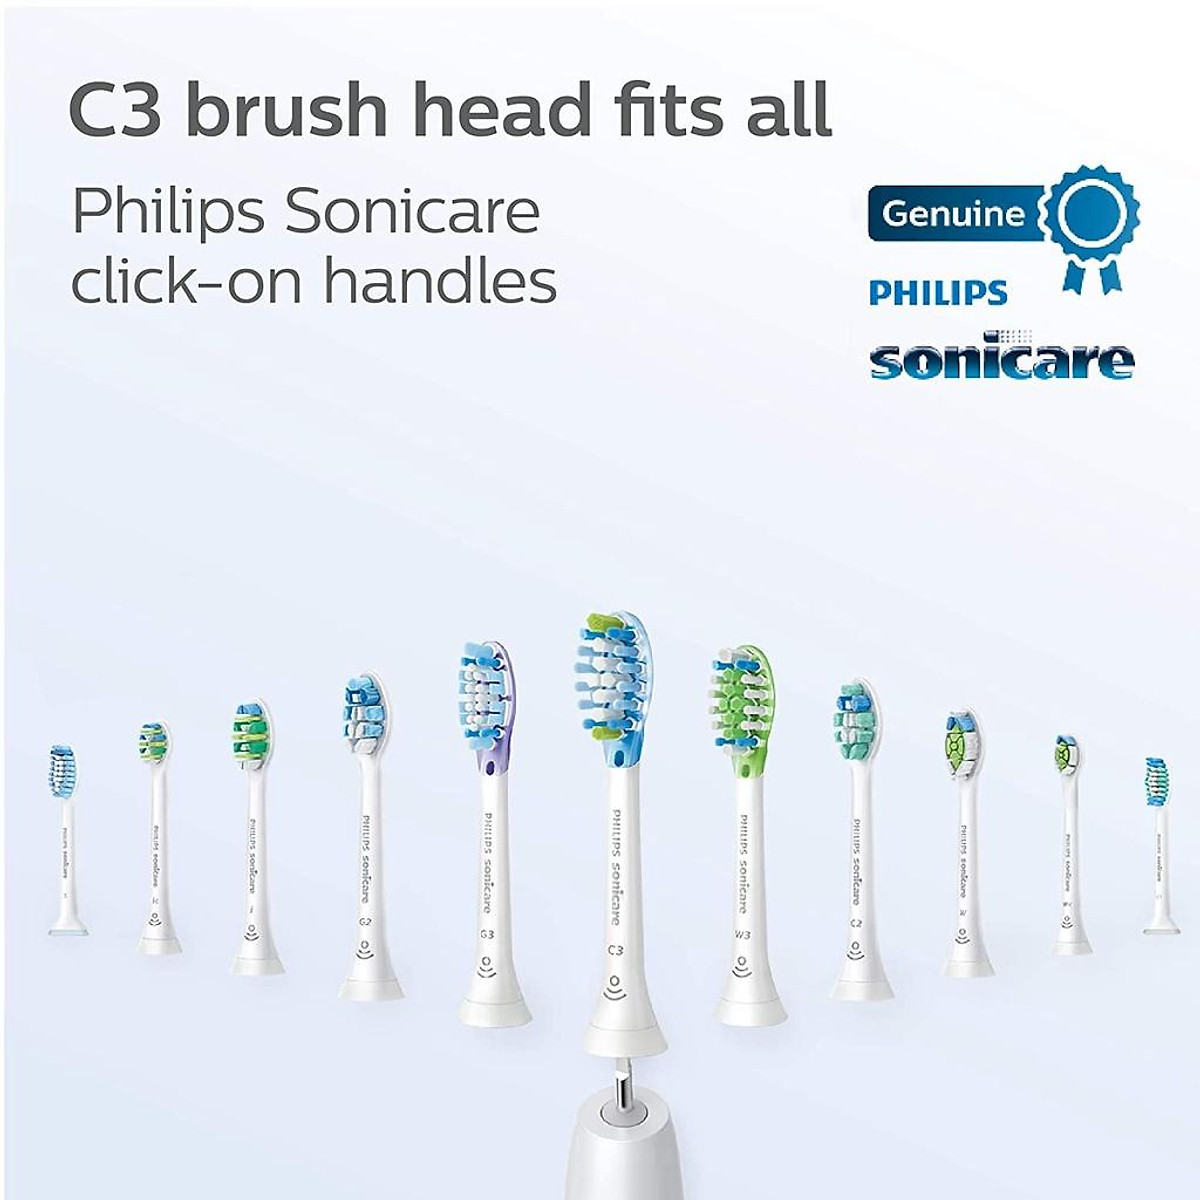 Đầu bàn chải Philips Sonicare C3（3 pcs）